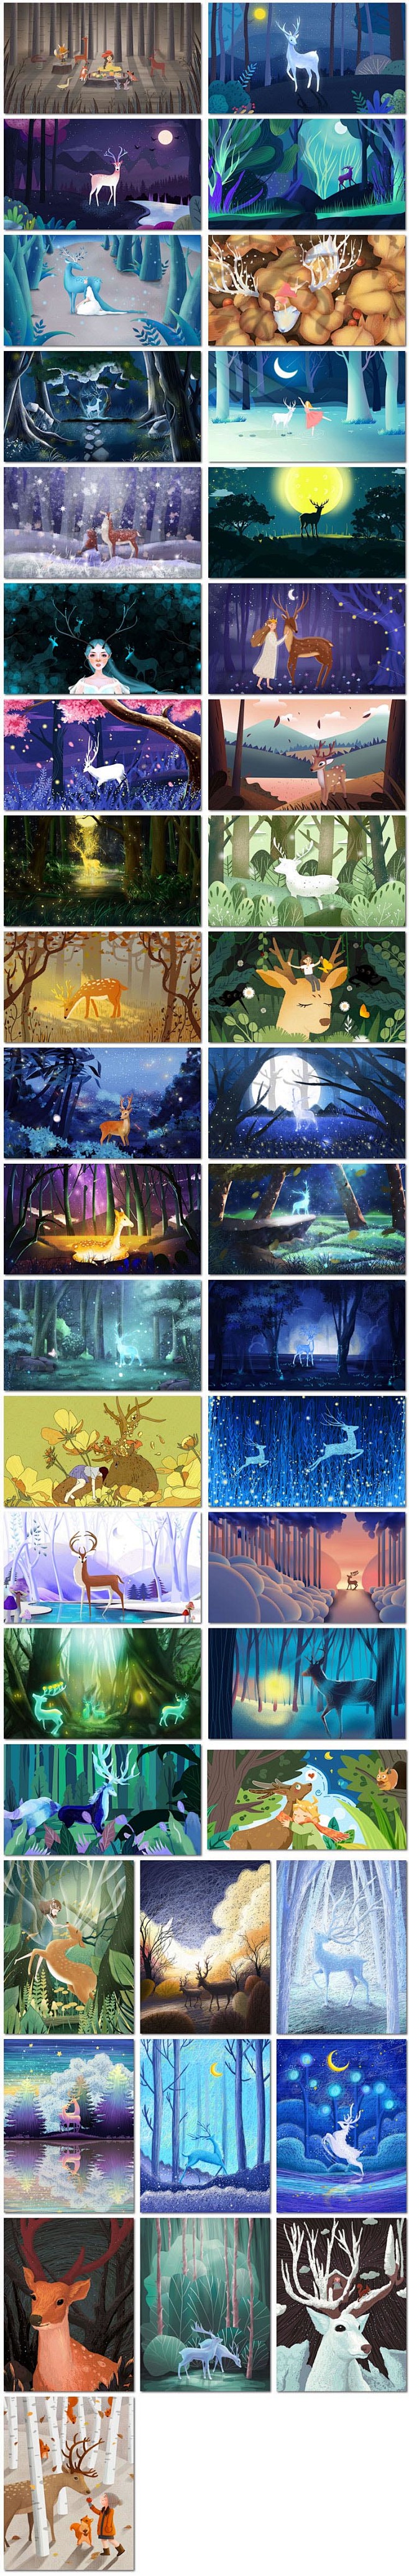 42张森林与鹿大自然梦幻仙境治愈卡通手绘插图画psd海报模板素材设计